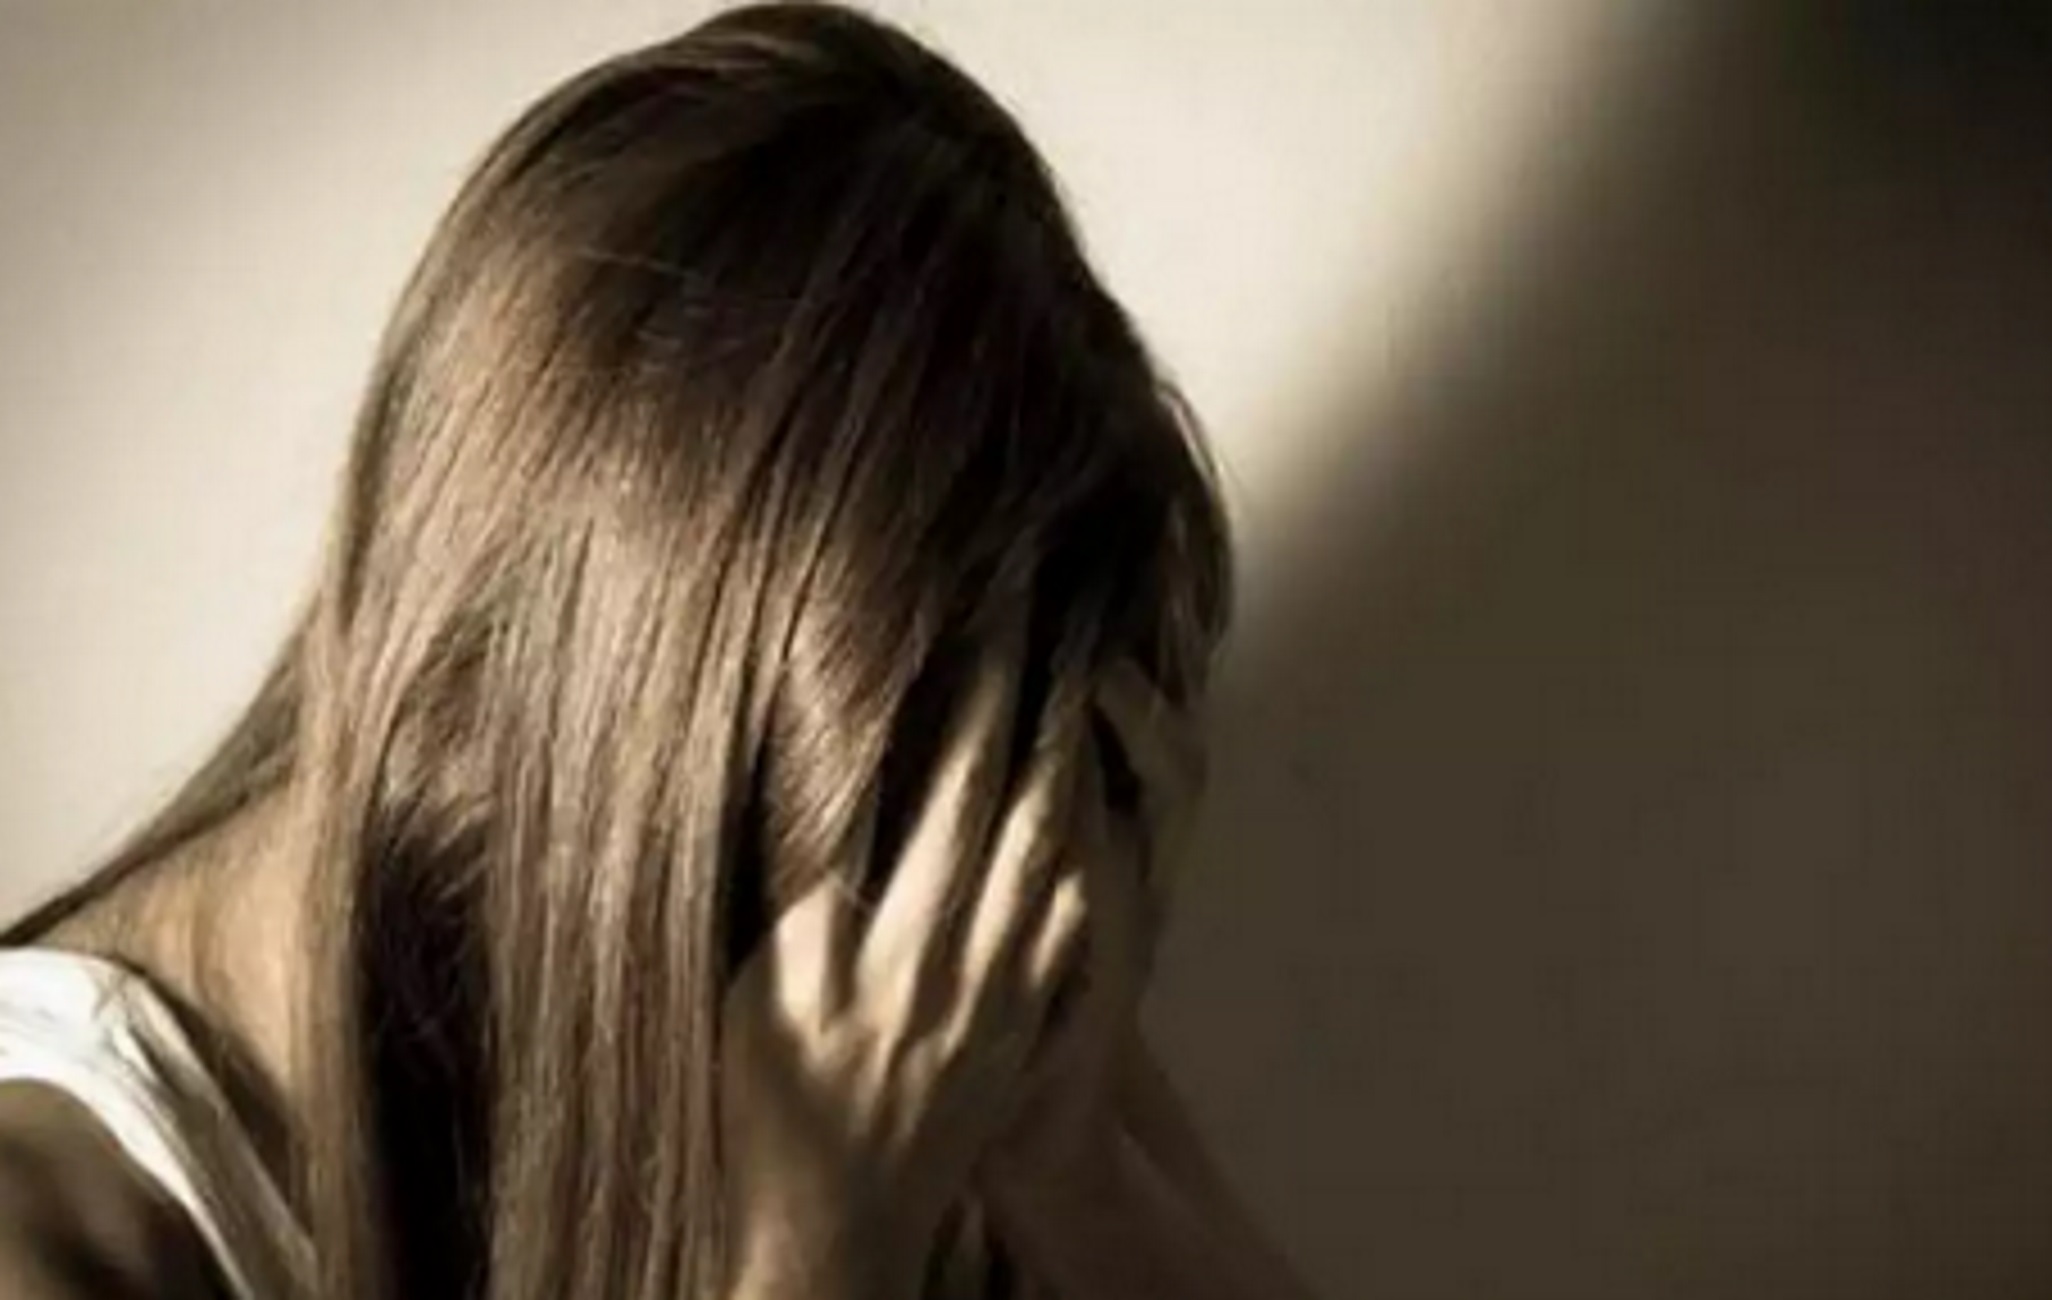 Πέραμα: Συνελήφθη 43χρονος που κατηγορείται για ασέλγεια σε 6χρονο κορίτσι